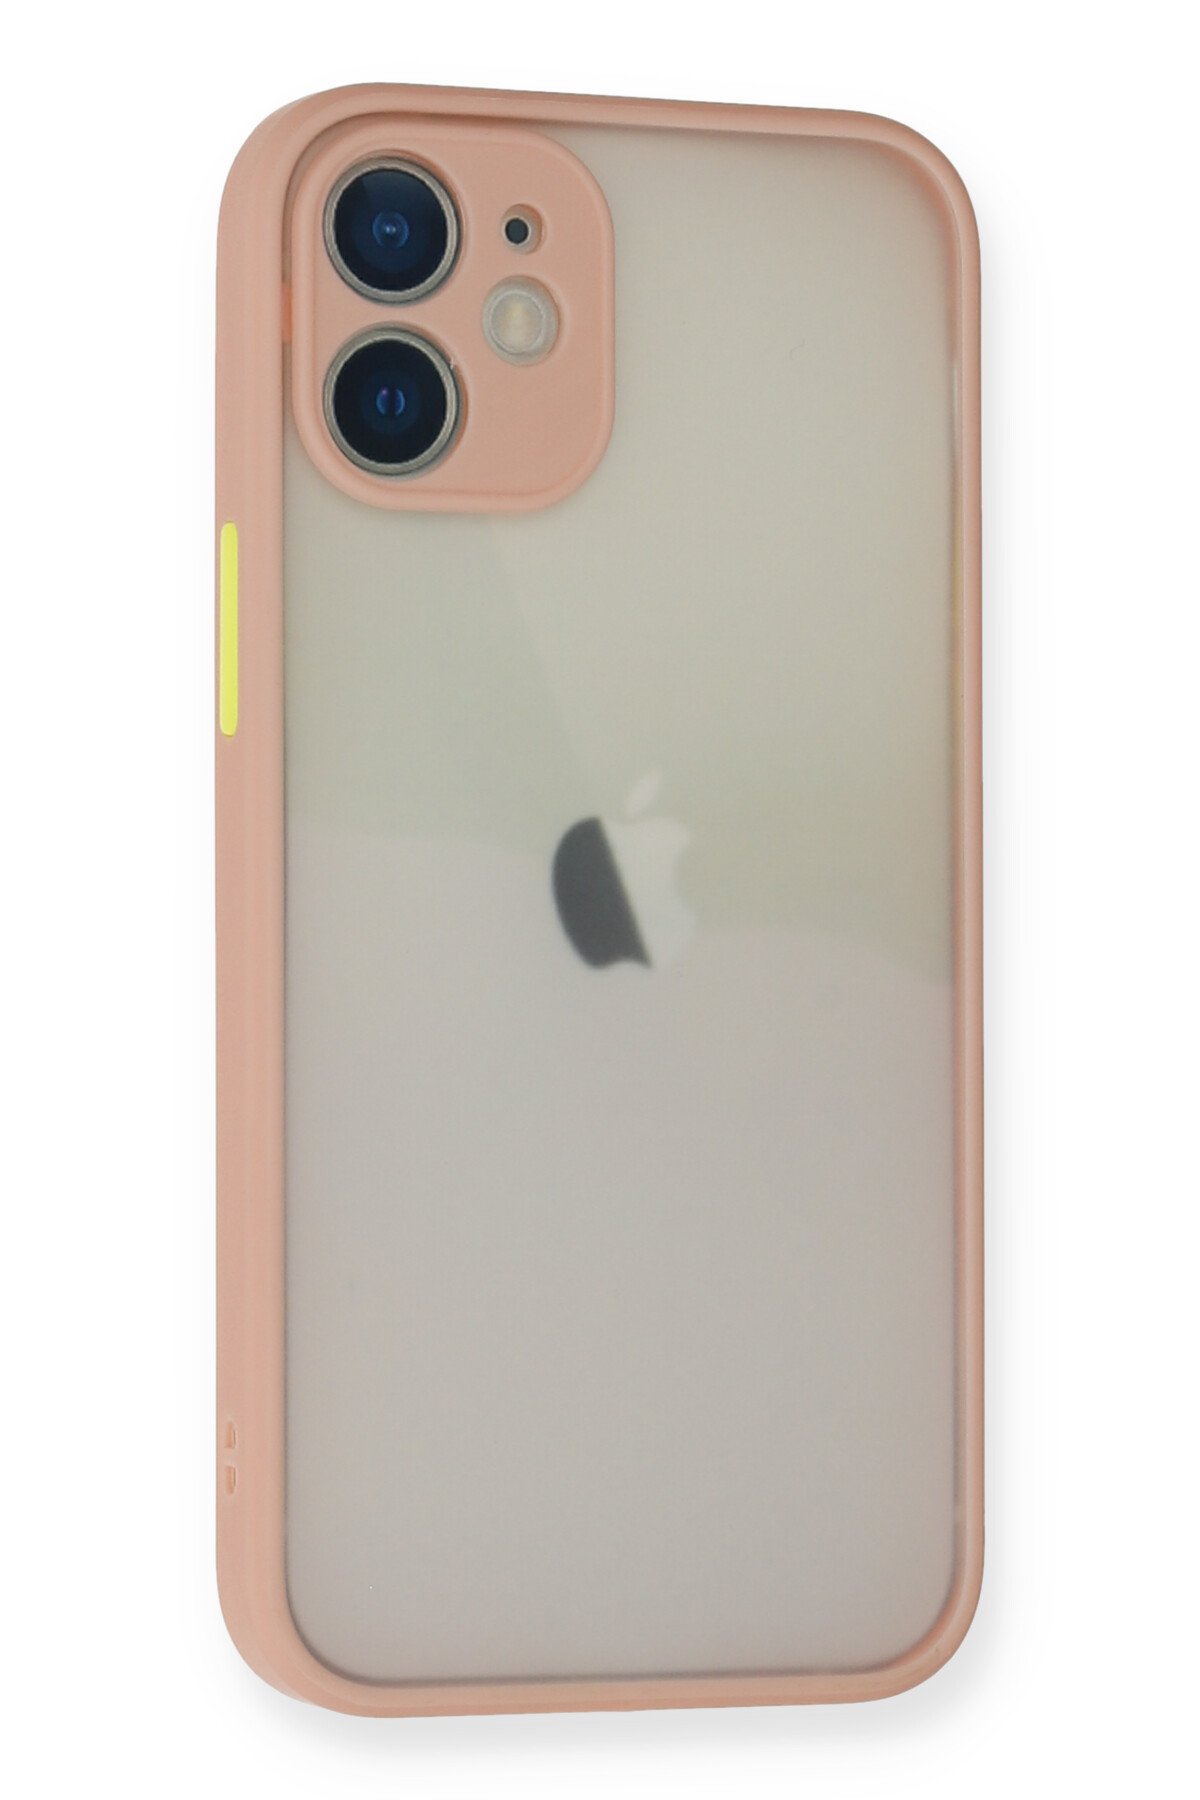 Newface iPhone 12 Mini Kılıf First Silikon - Koyu Kırmızı